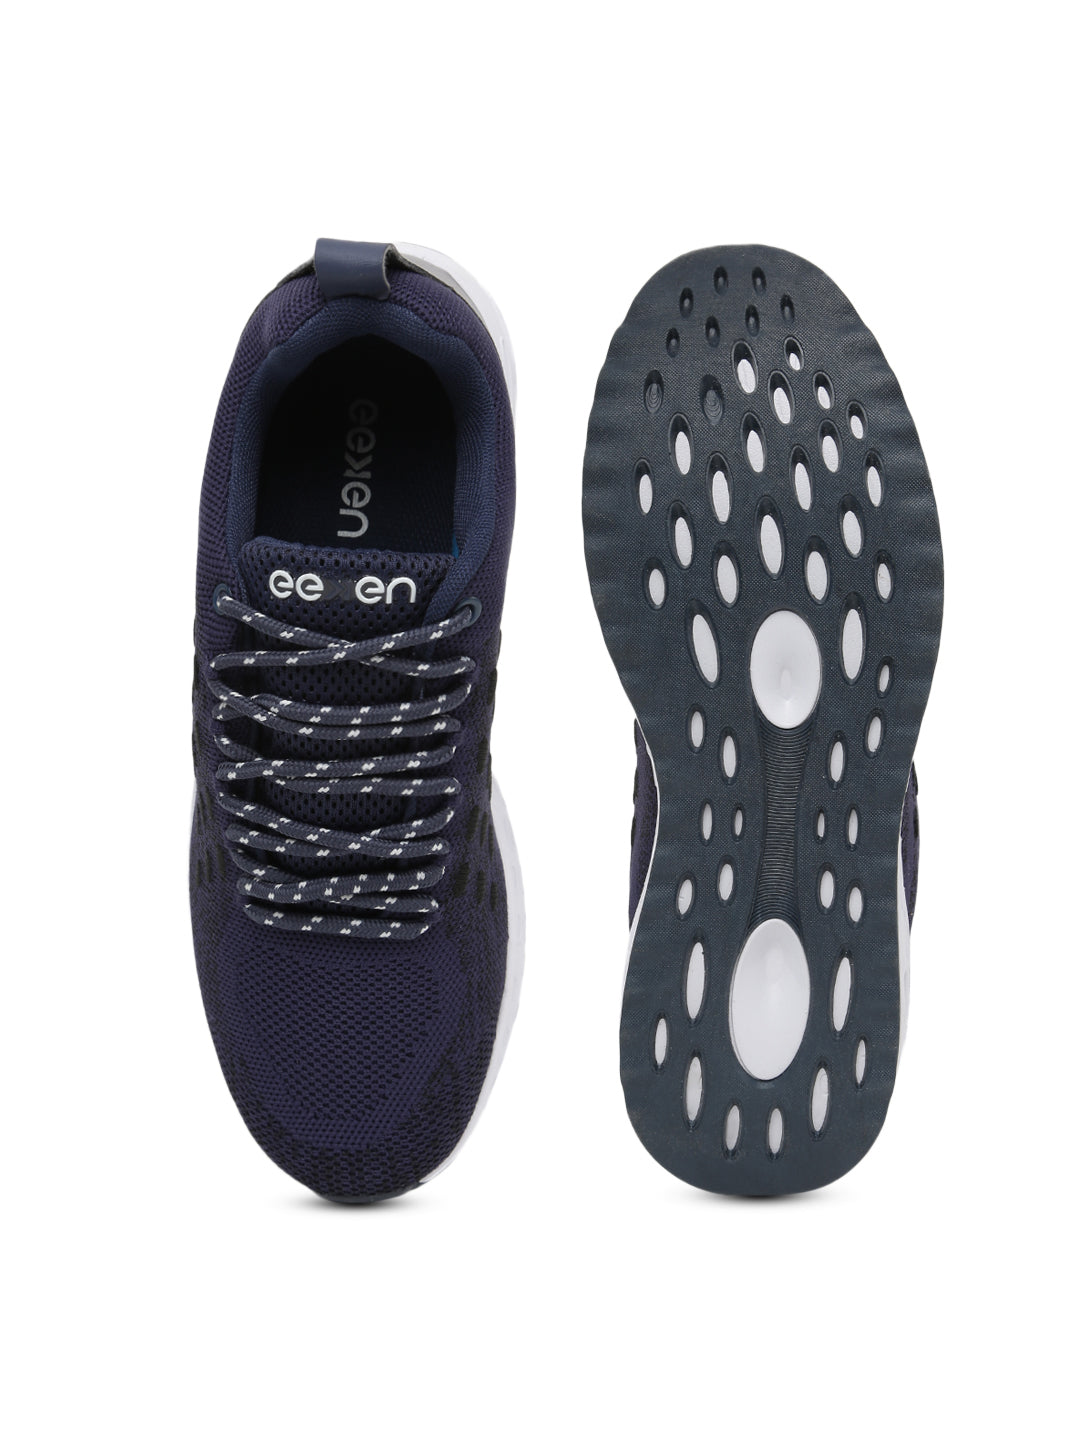 Eeken ESHG32001 Navy Lightweight Casual Outdoor Shoes For Men